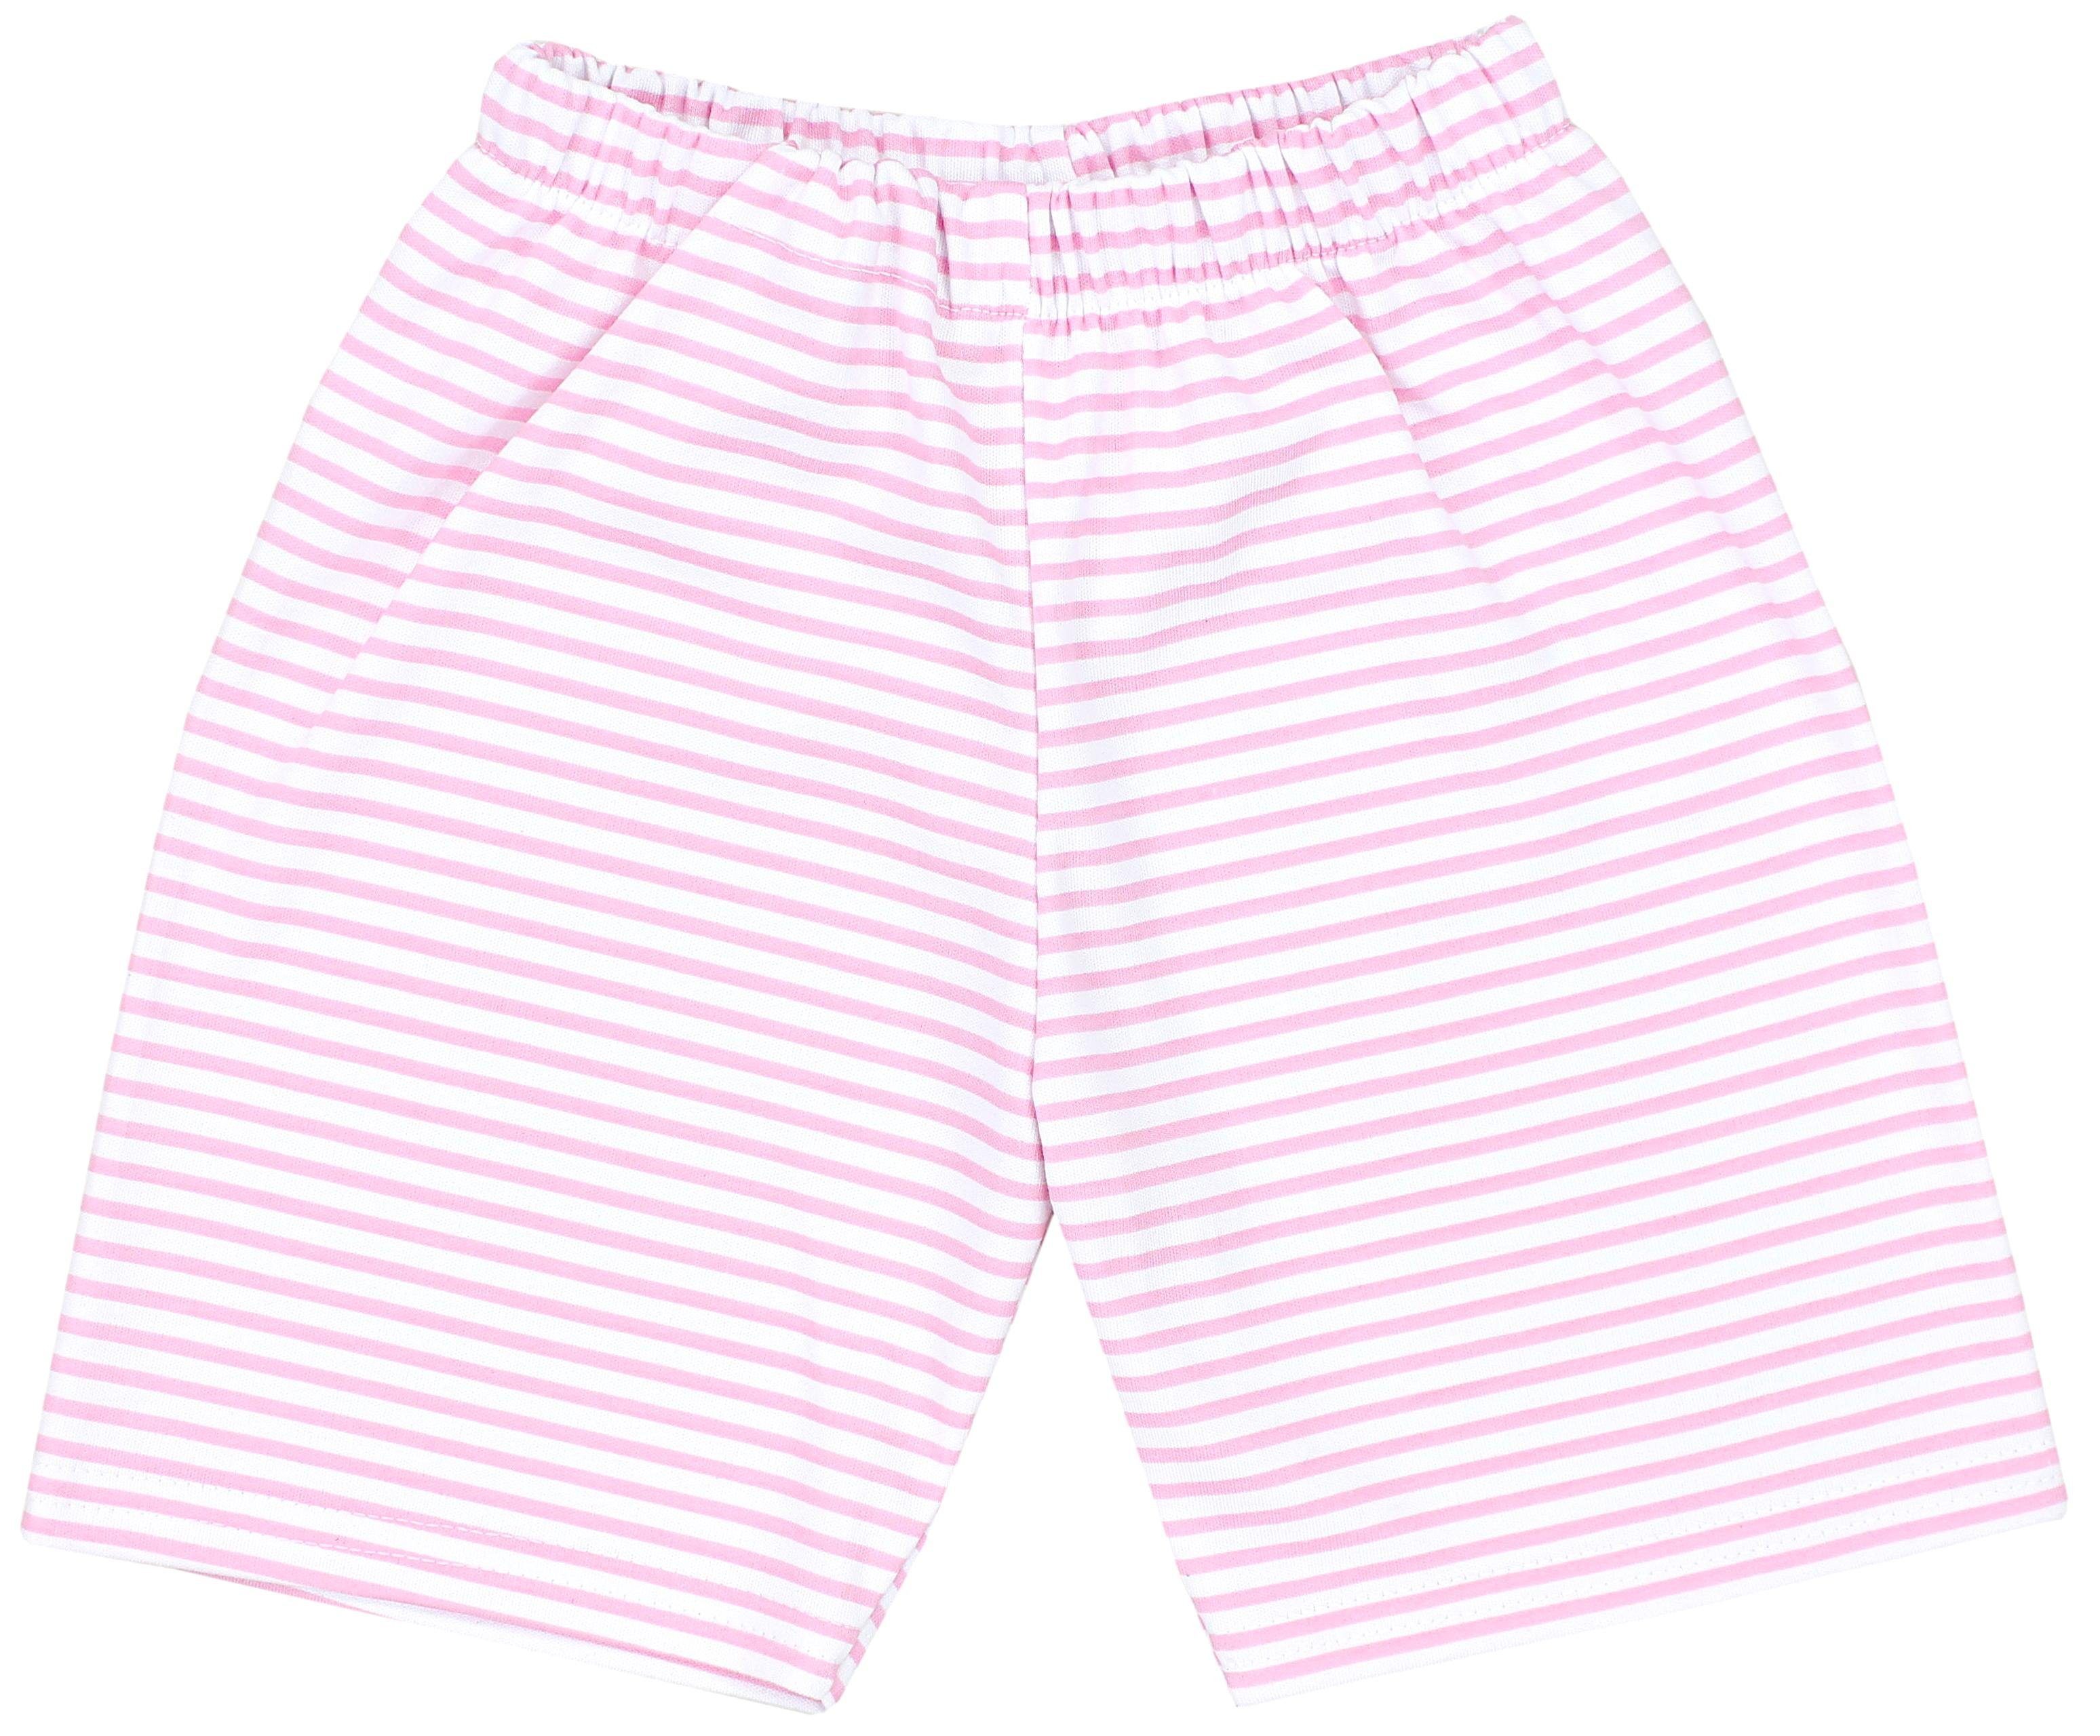 TupTam Schlafanzug 2-teilig TupTam Set Kurzarm Rosa Schlafanzug HAPPY Streifen CHOOSE Mädchen Kinder / Pyjama